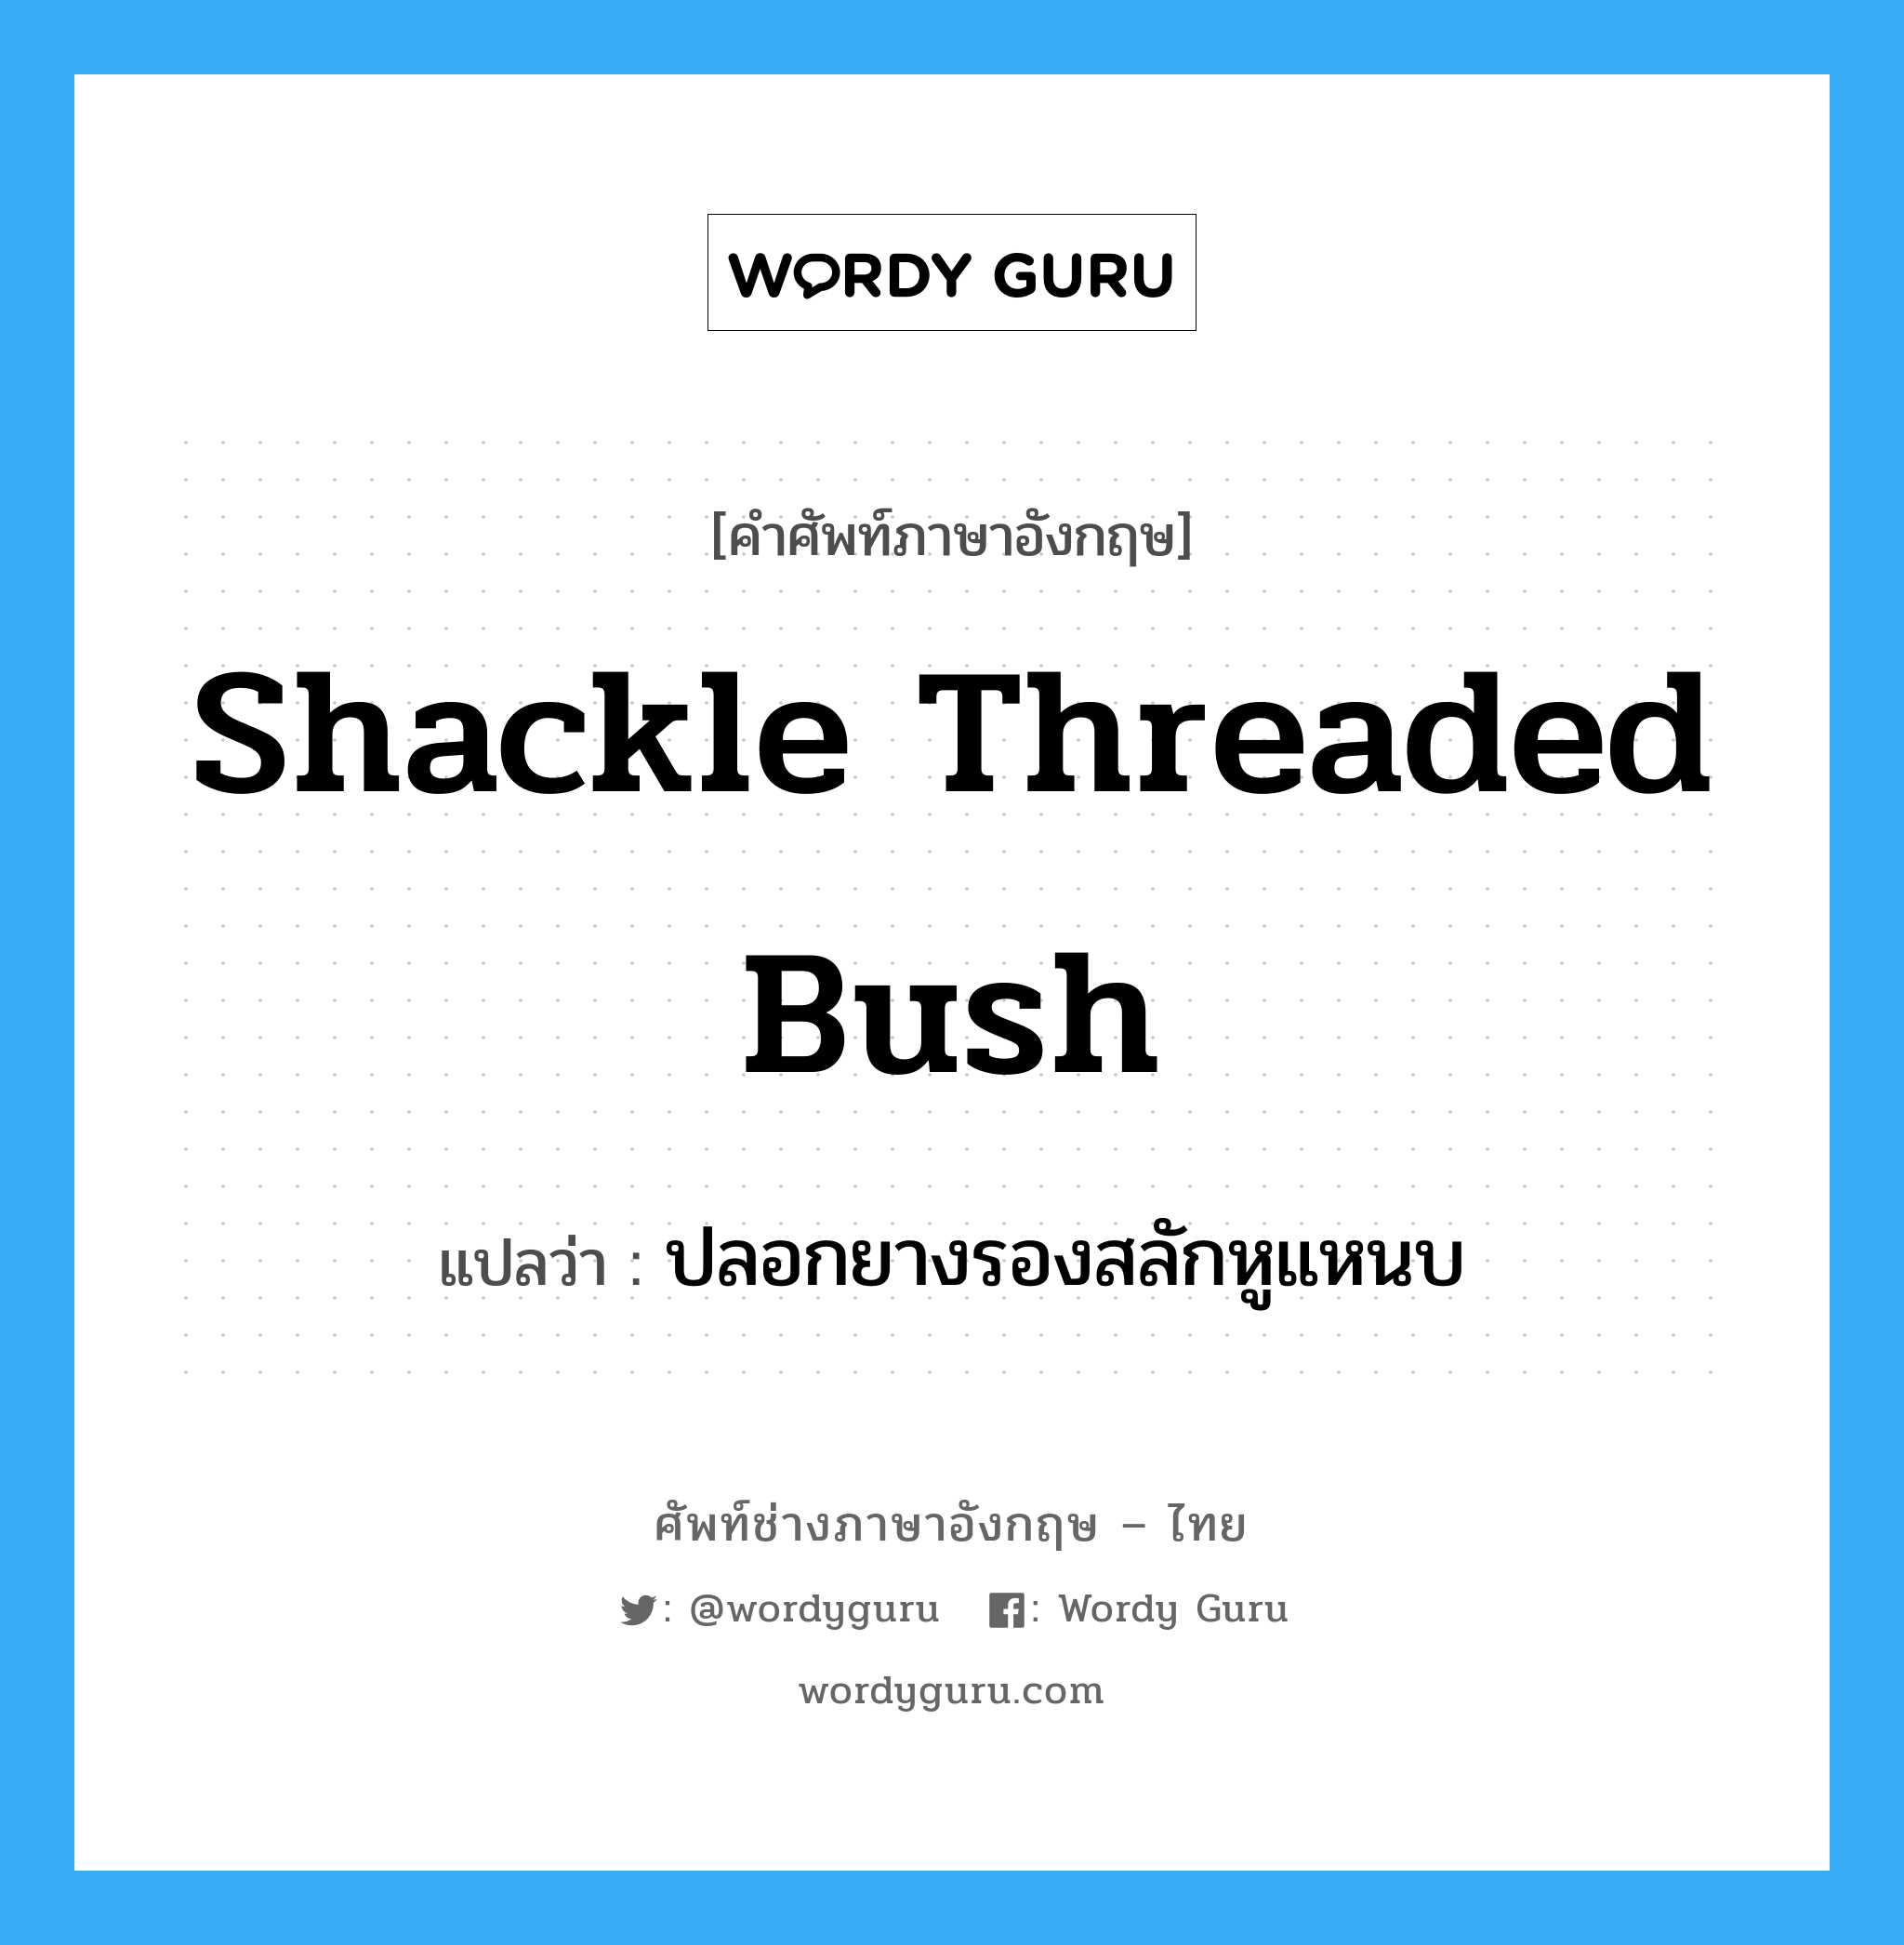 ปลอกยางรองสลักหูแหนบ ภาษาอังกฤษ?, คำศัพท์ช่างภาษาอังกฤษ - ไทย ปลอกยางรองสลักหูแหนบ คำศัพท์ภาษาอังกฤษ ปลอกยางรองสลักหูแหนบ แปลว่า shackle threaded bush